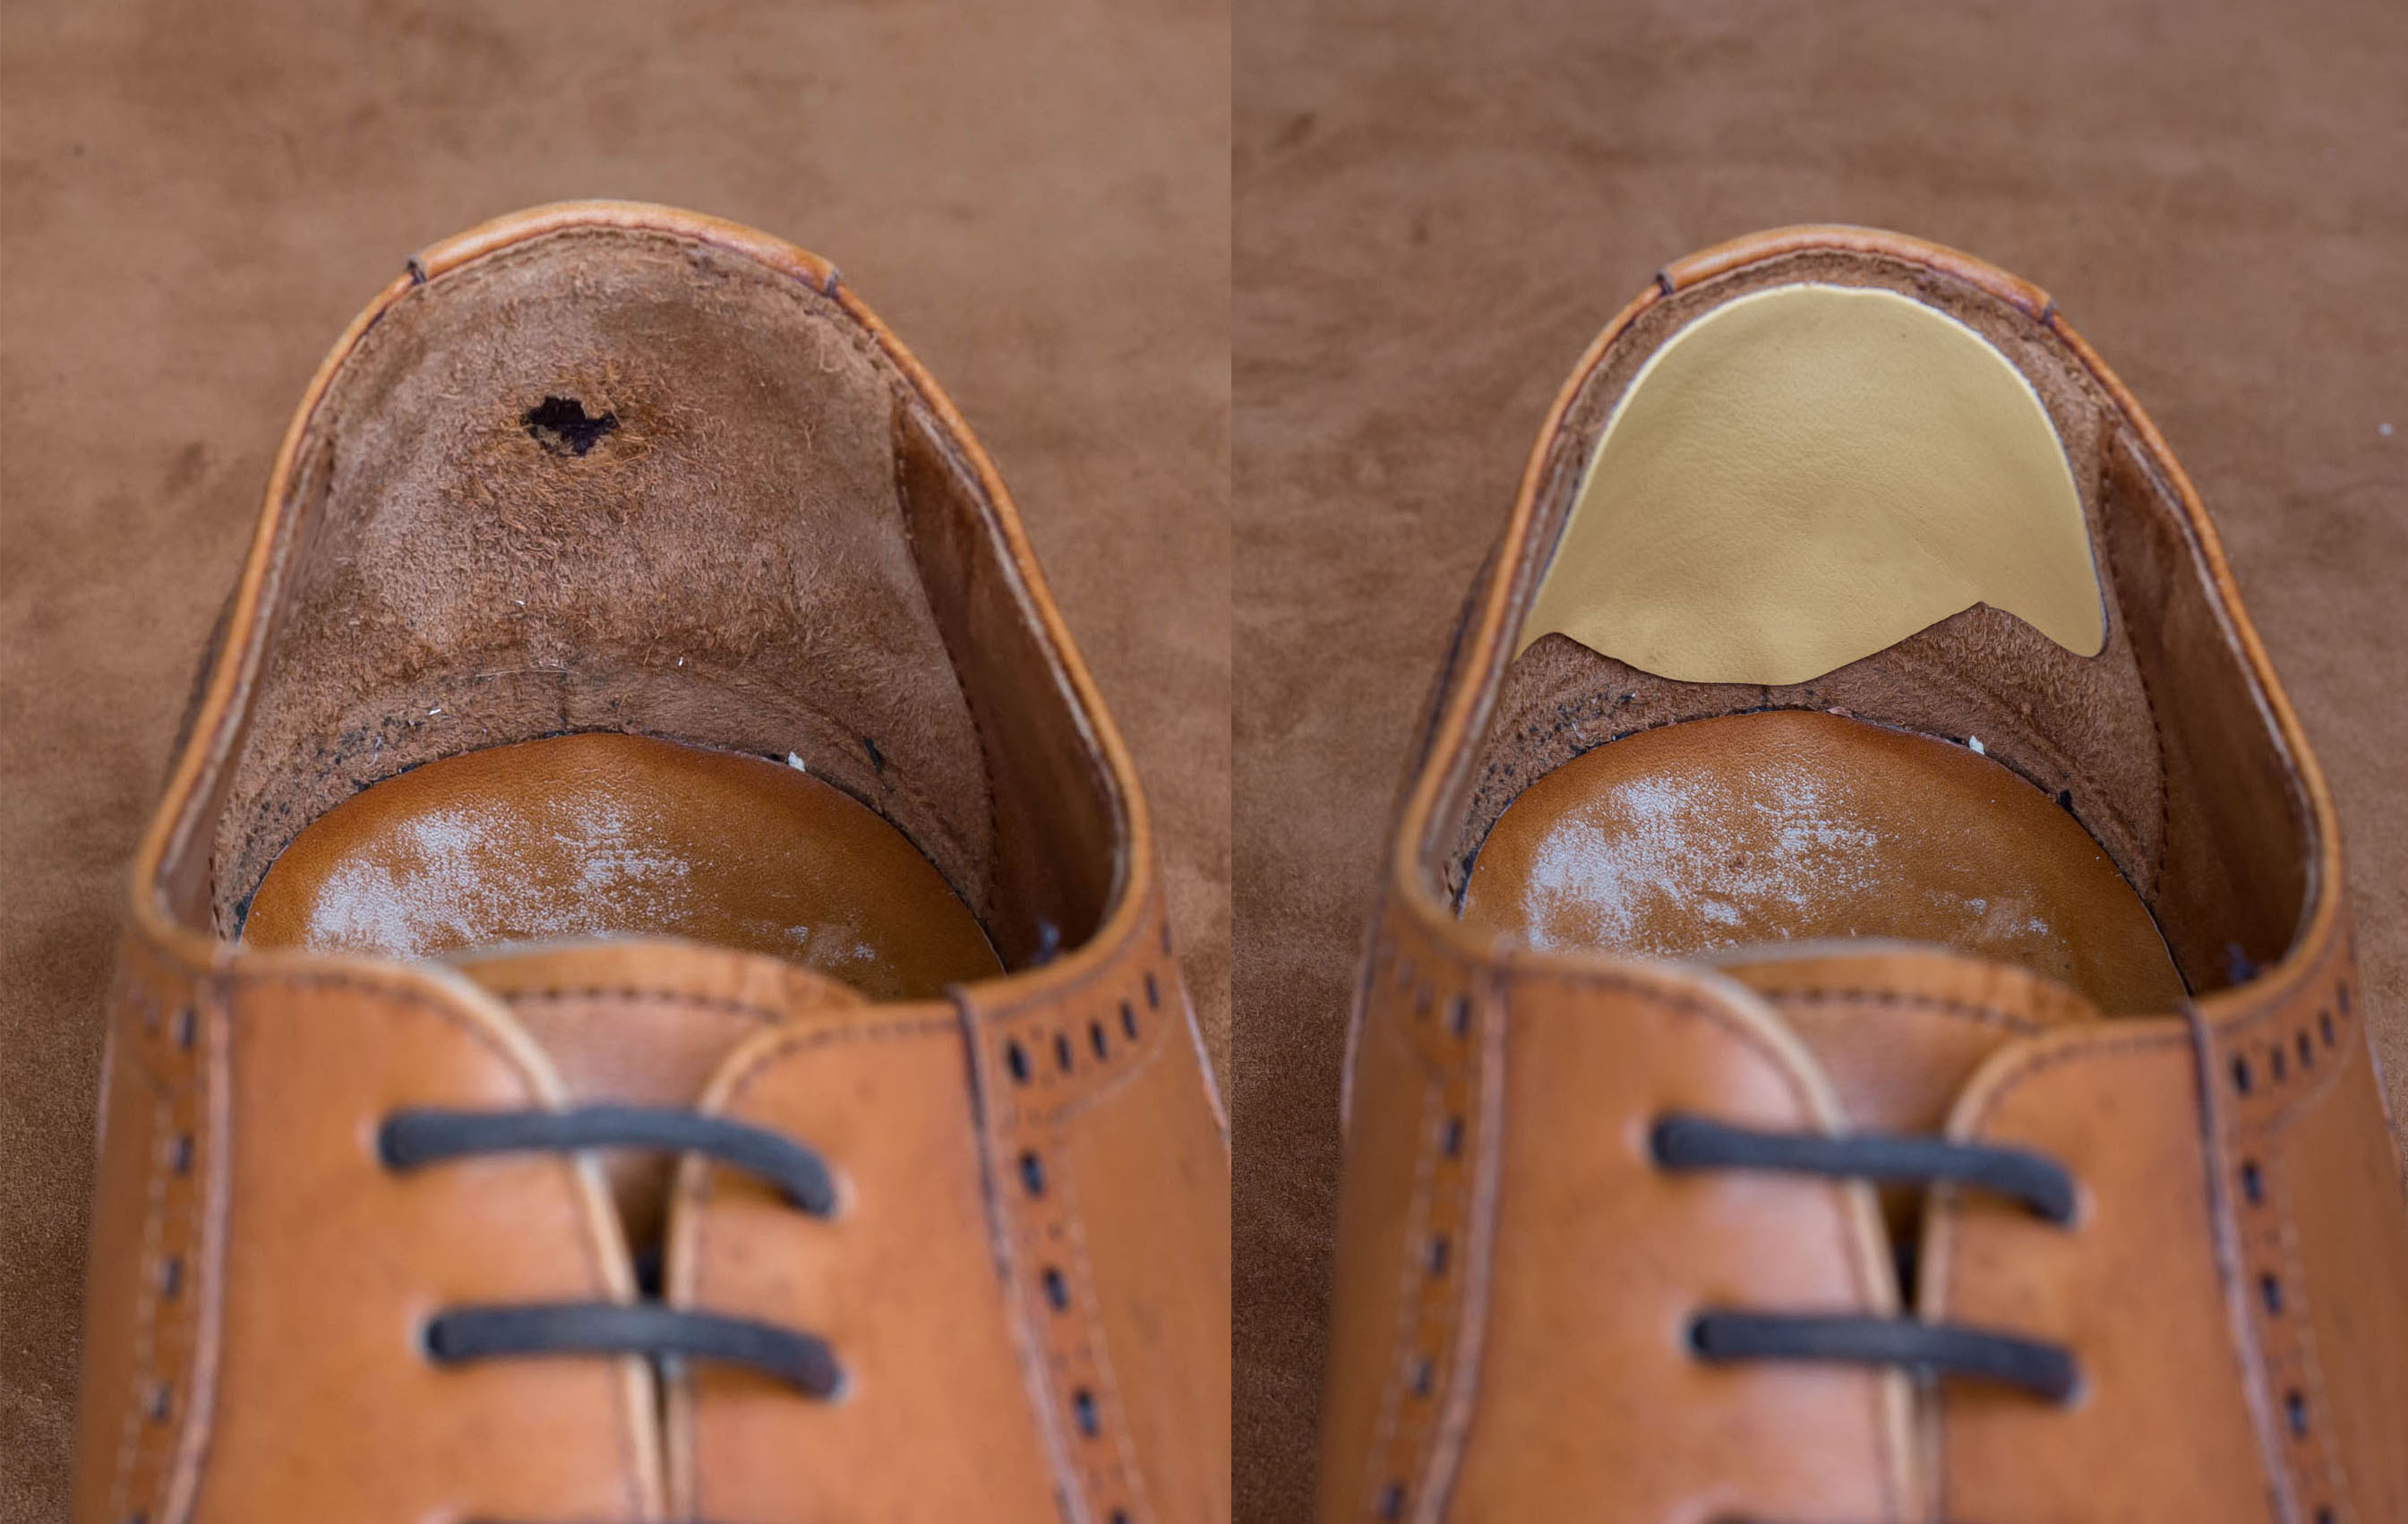 spor-ayakkabilarin-topuk-astari-neden-kolay-deforme-olur-bunu-nasil-engelleriz-yenicag-5.jpg